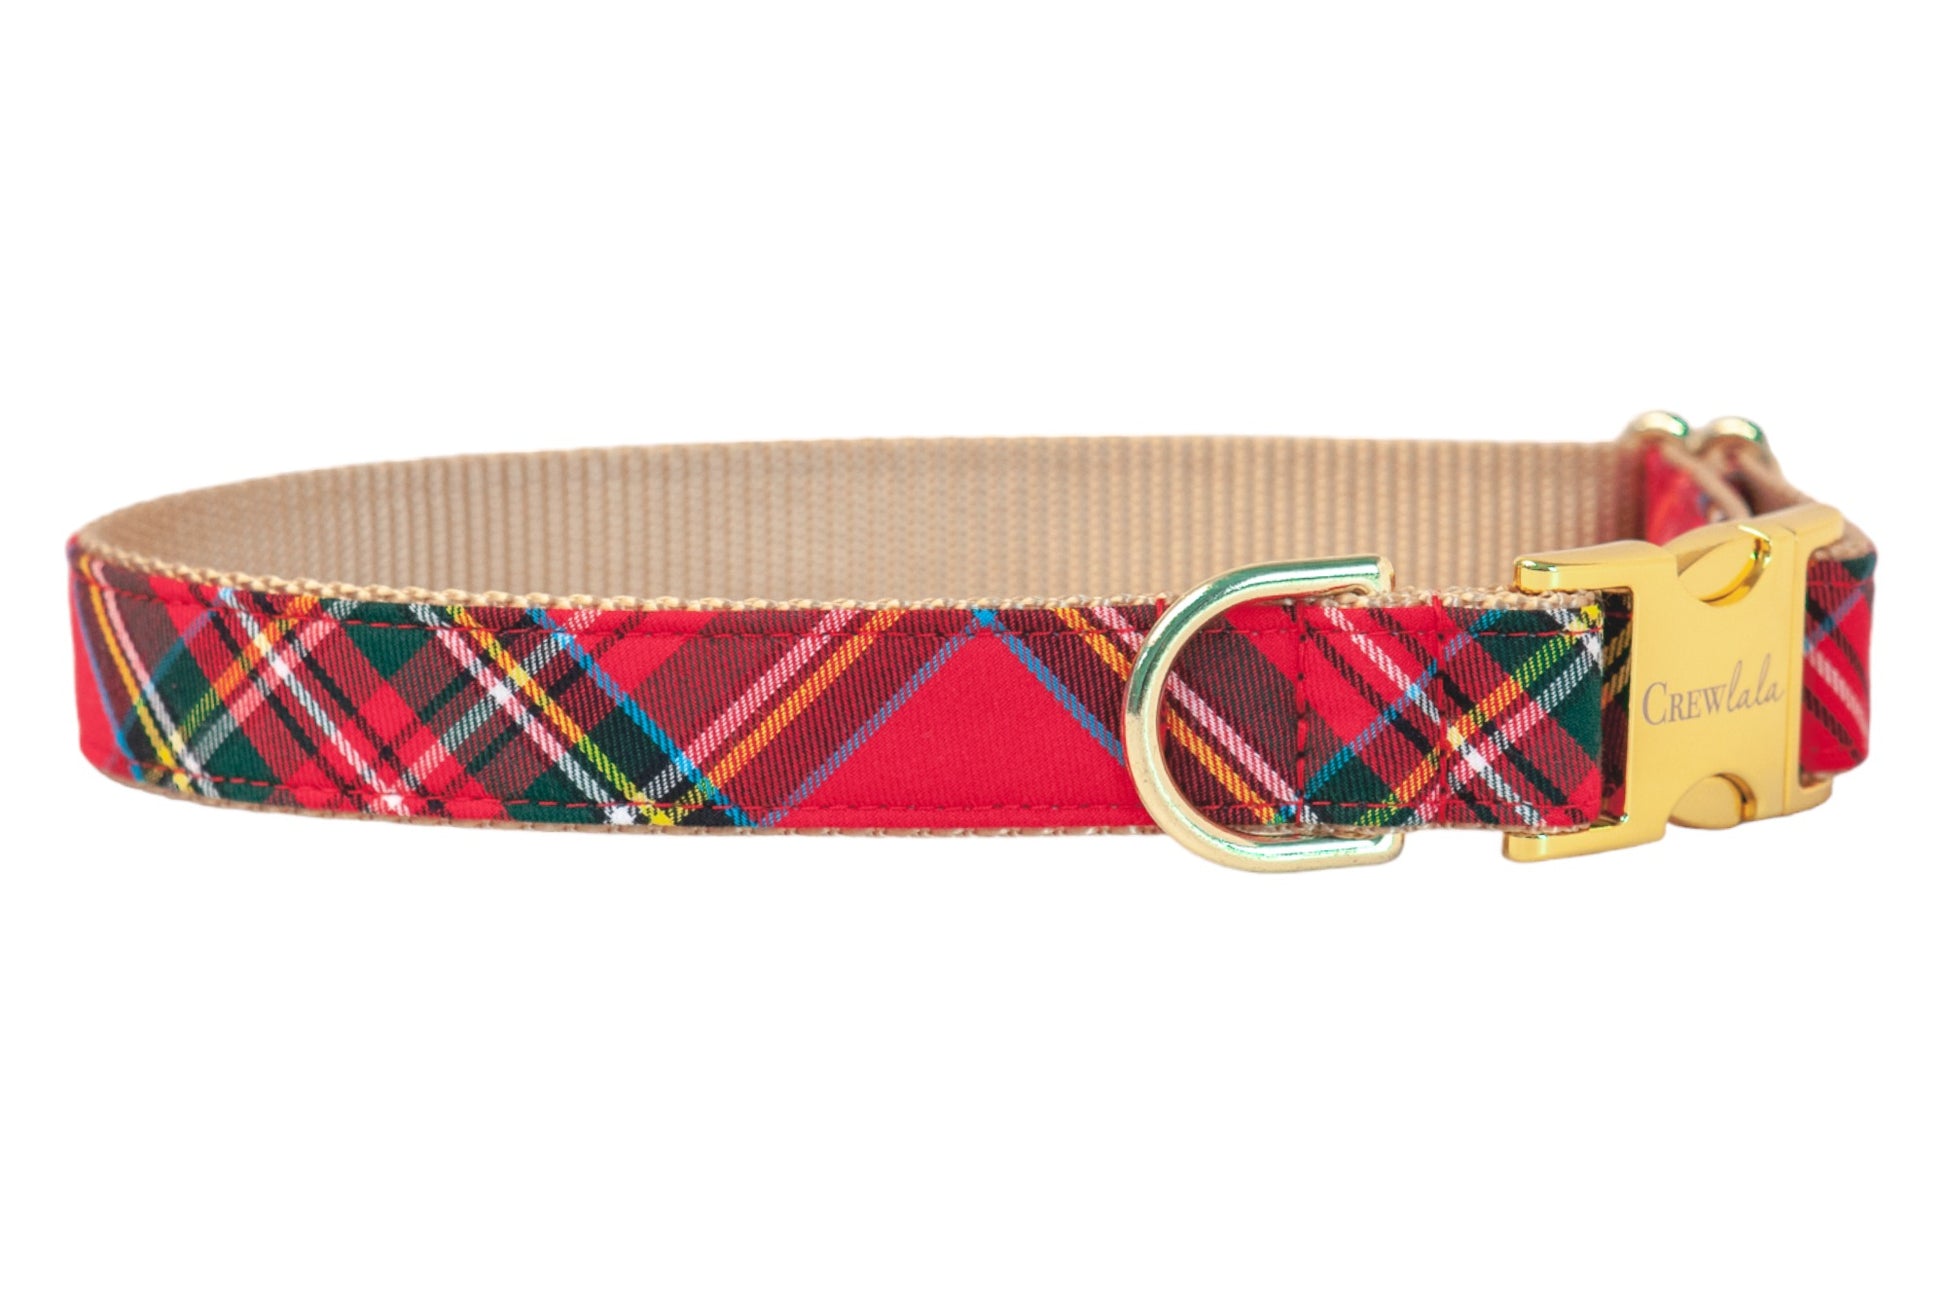 Scottish Tartan Dog Collar - Crew LaLa